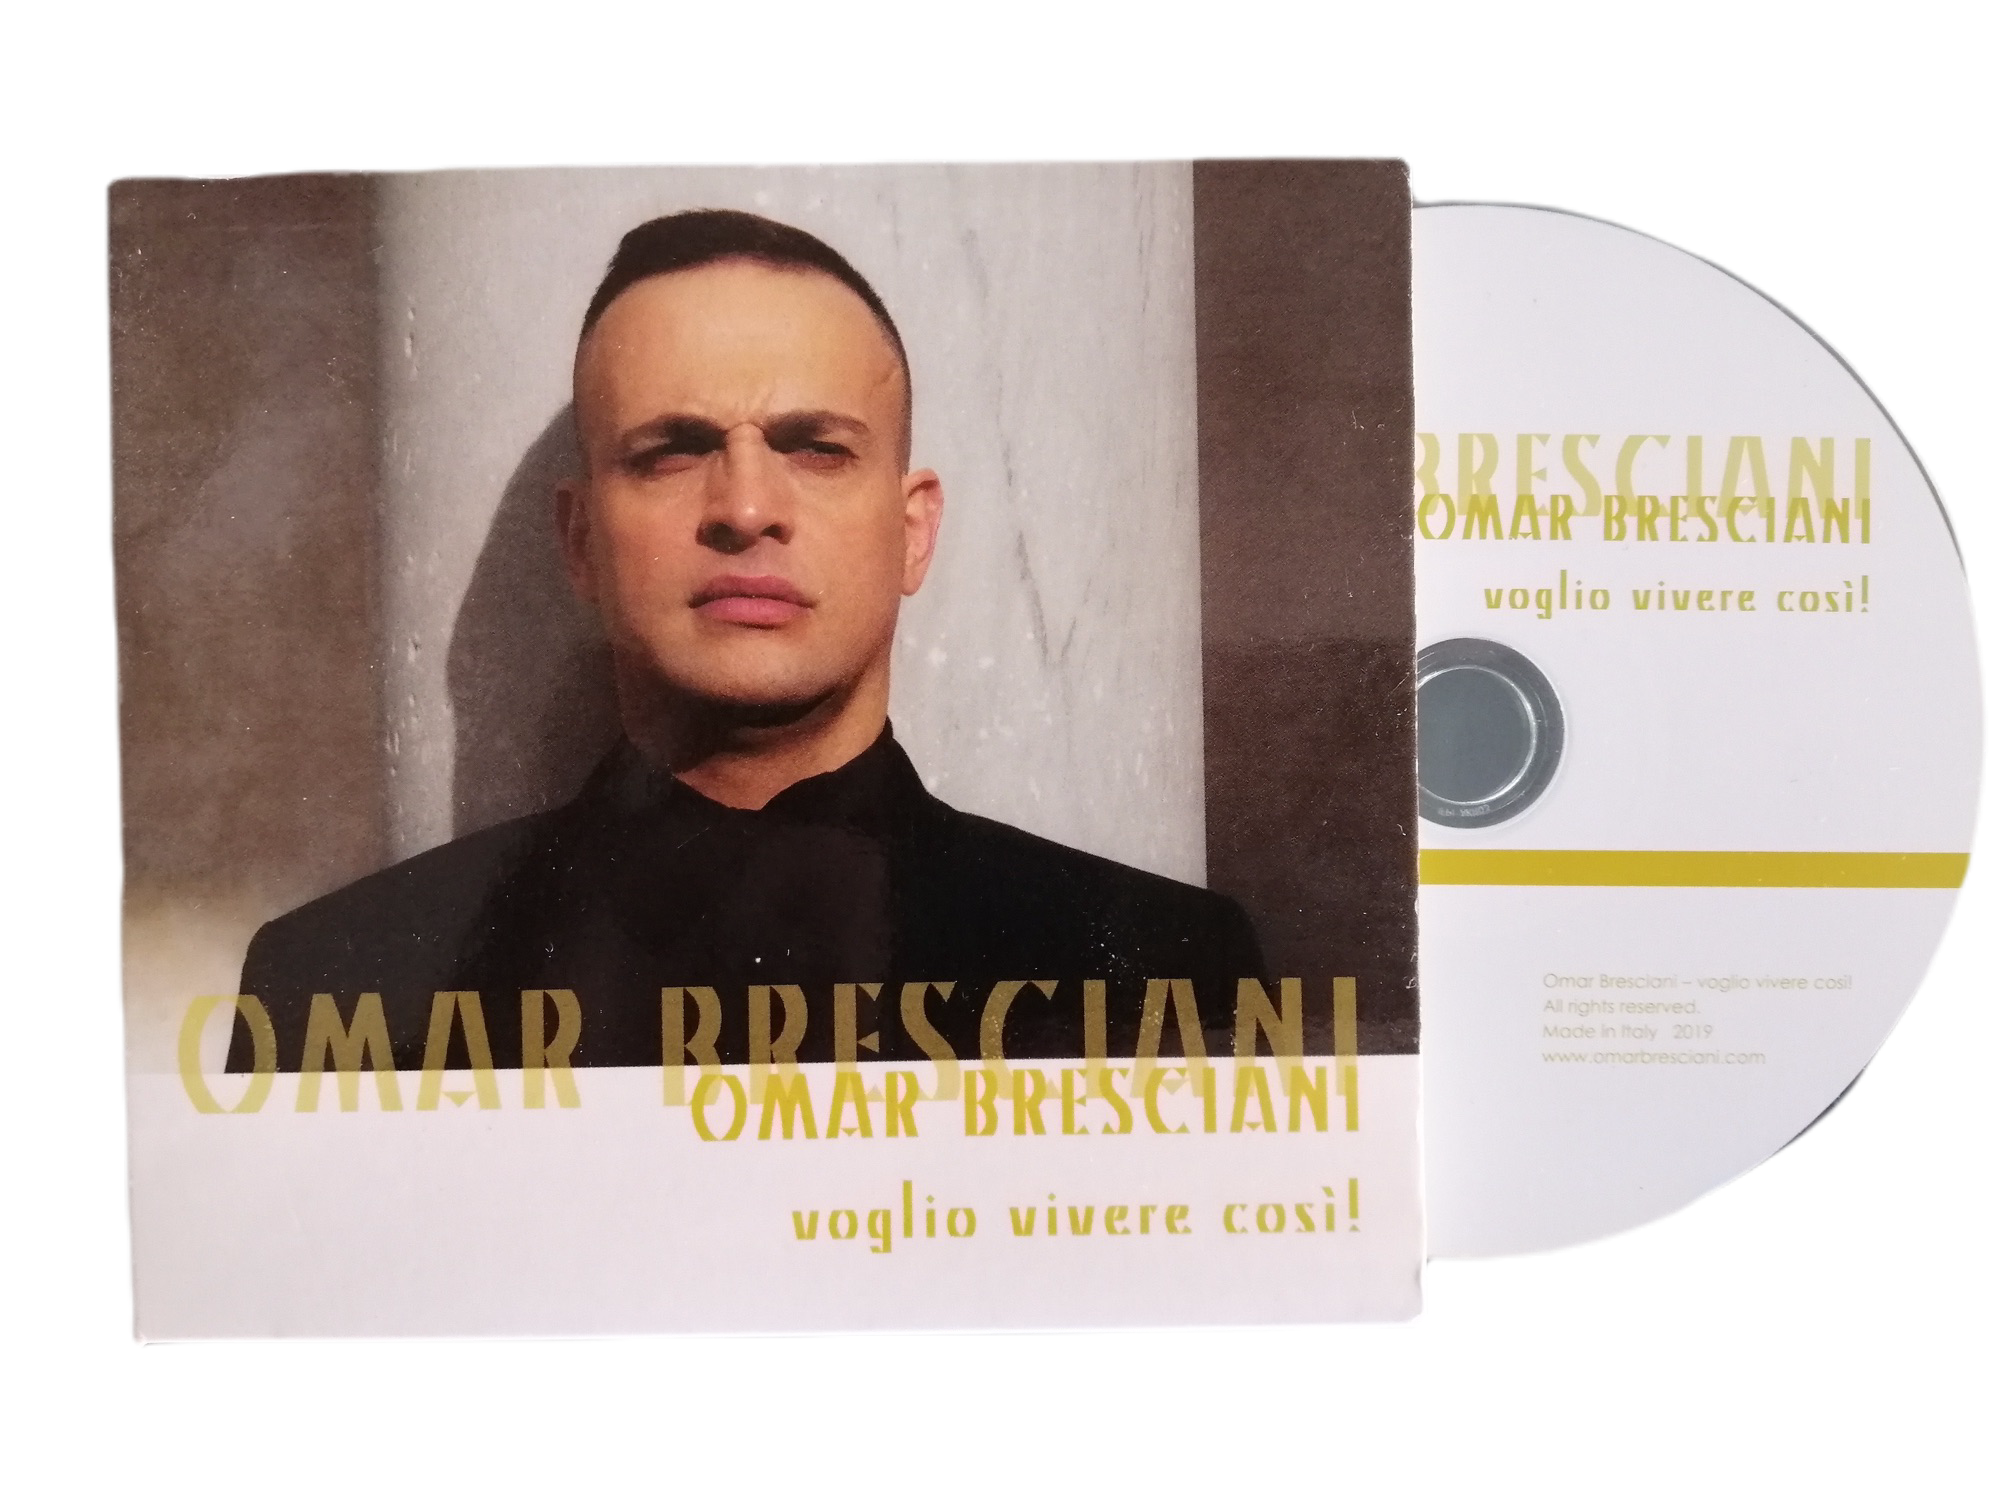 Operatic pop Italian album : "Voglio vivere così!" by Omar Bresciani, Italian tenor